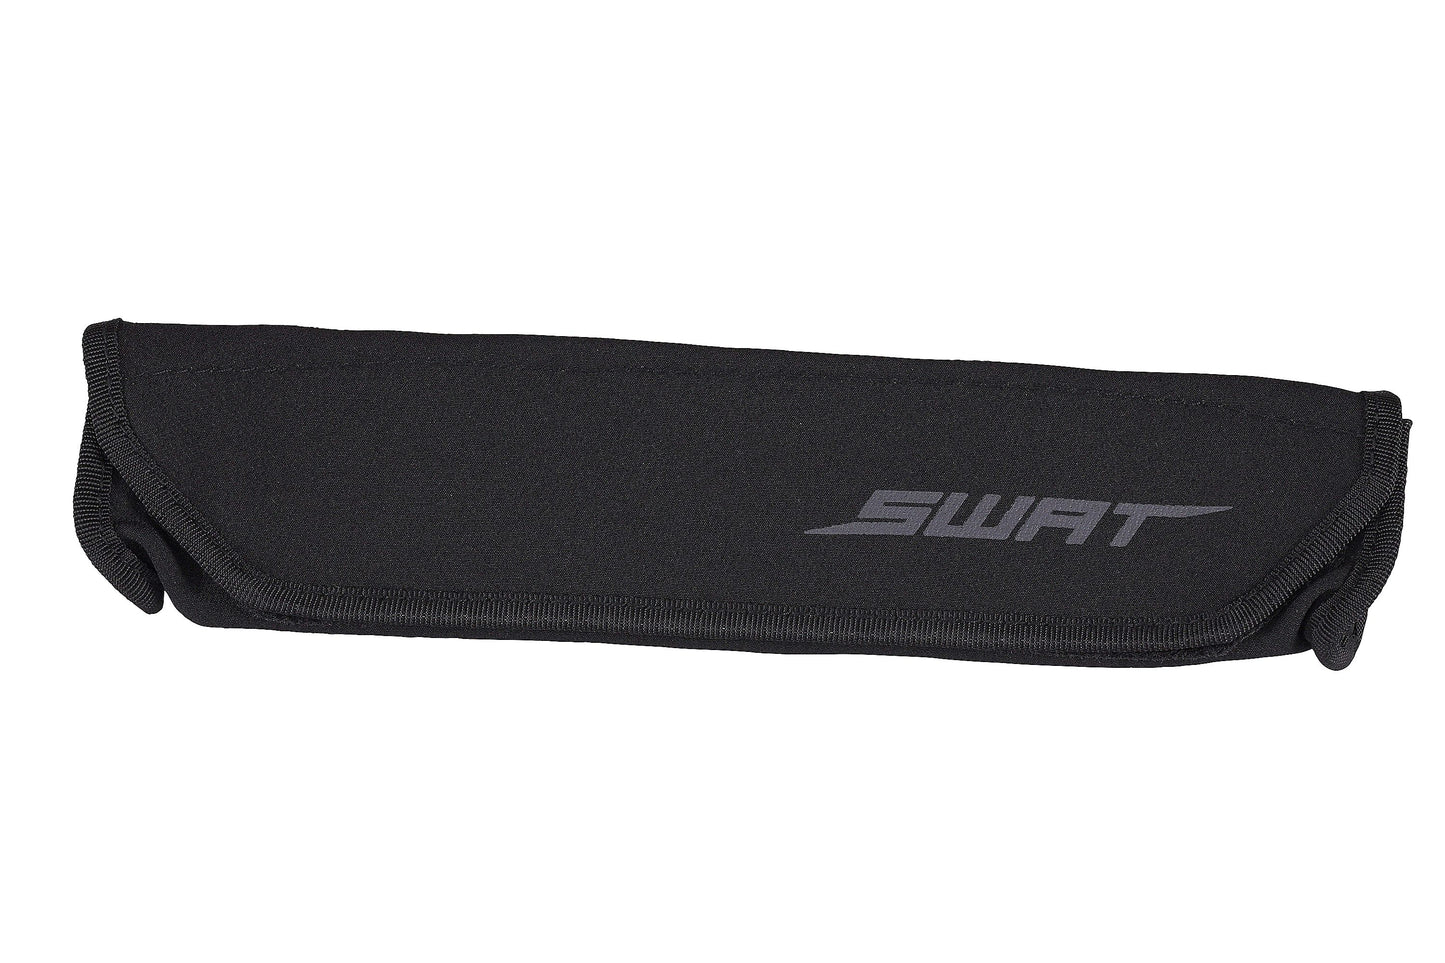 Swat Pump Wrap in Black